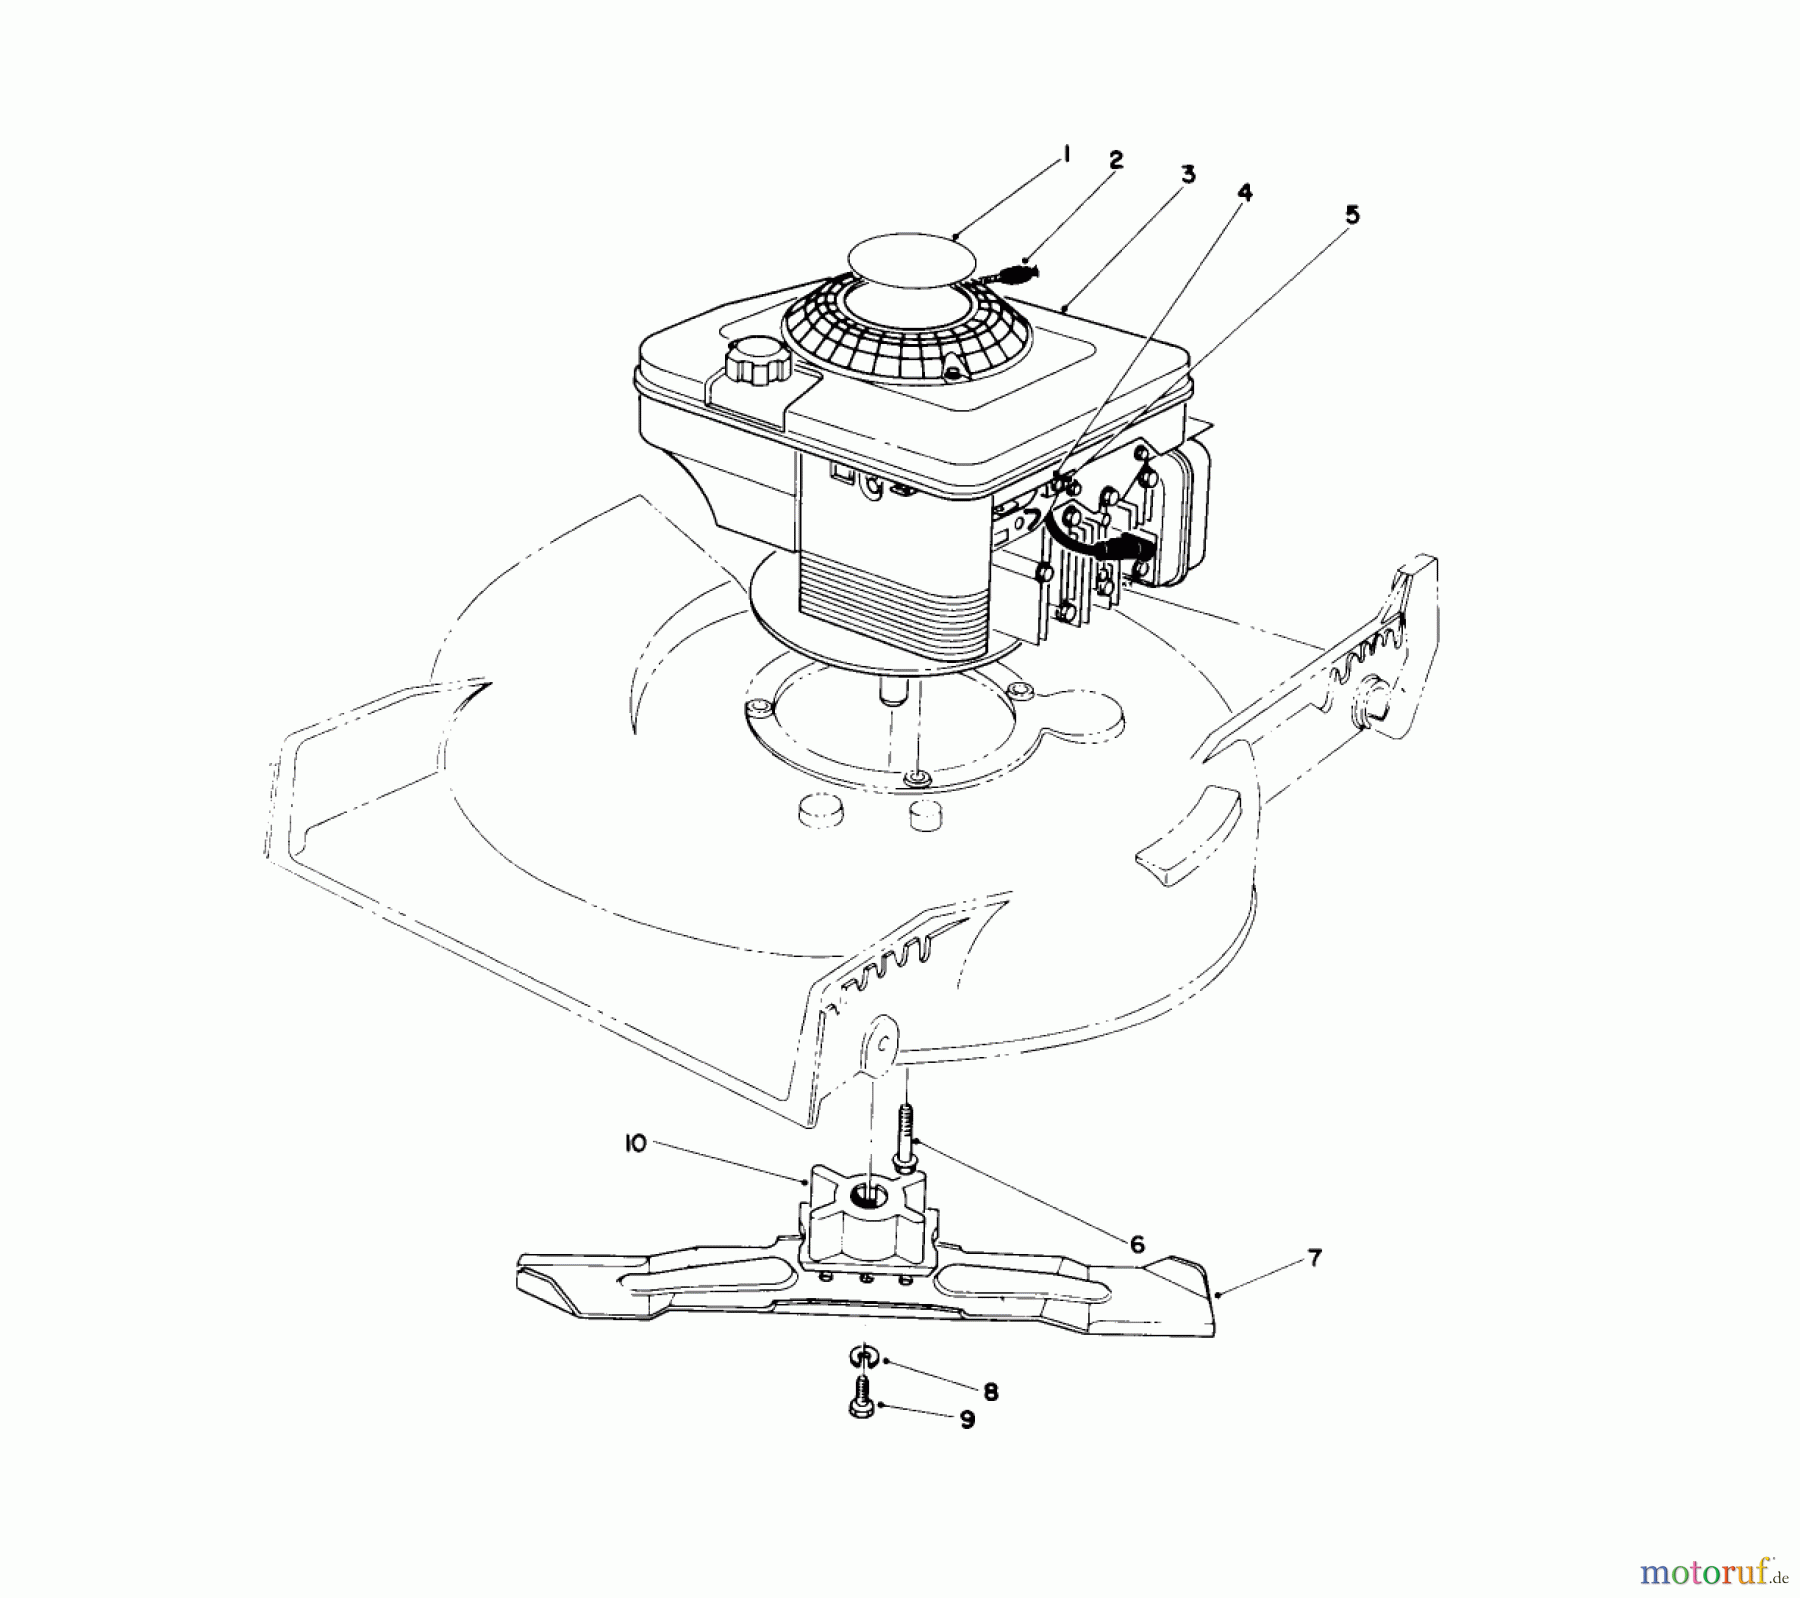  Toro Neu Mowers, Walk-Behind Seite 1 20563 - Toro Lawnmower, 1991 (1000001-1999999) ENGINE ASSEMBLY